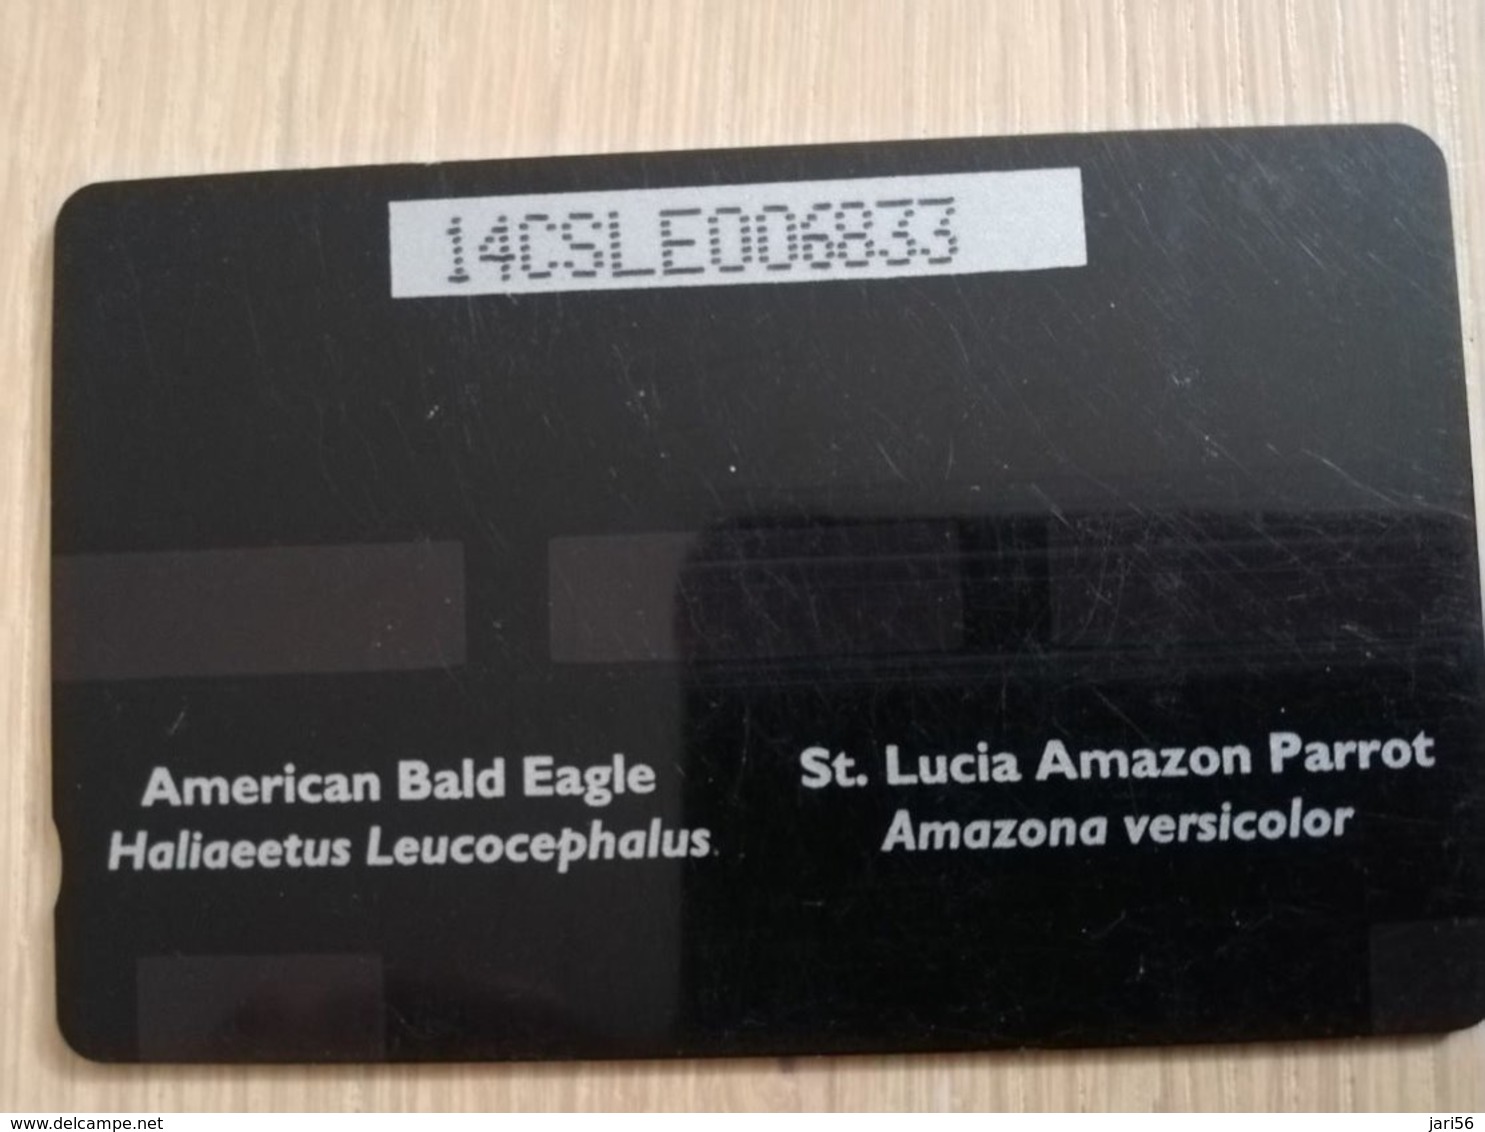 ST LUCIA    $ 53/ US 20  CABLE & WIRELESS  STL-14E  14CSLE    PARROT/EAGLE  Fine Used Card ** 2408** - Saint Lucia